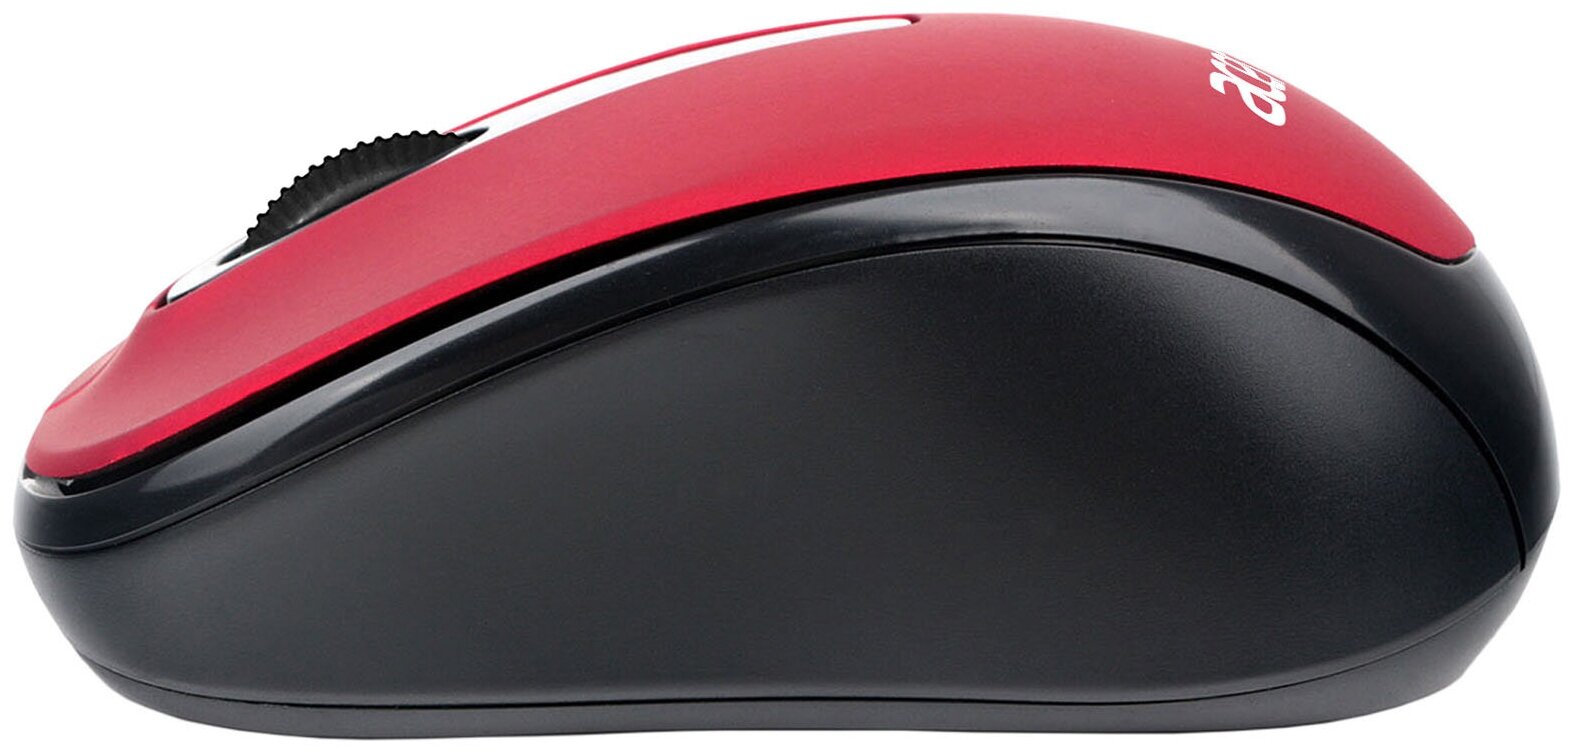 Мышь Acer OMR136 красный оптическая (1000dpi) беспроводная USB для ноутбука (2but)